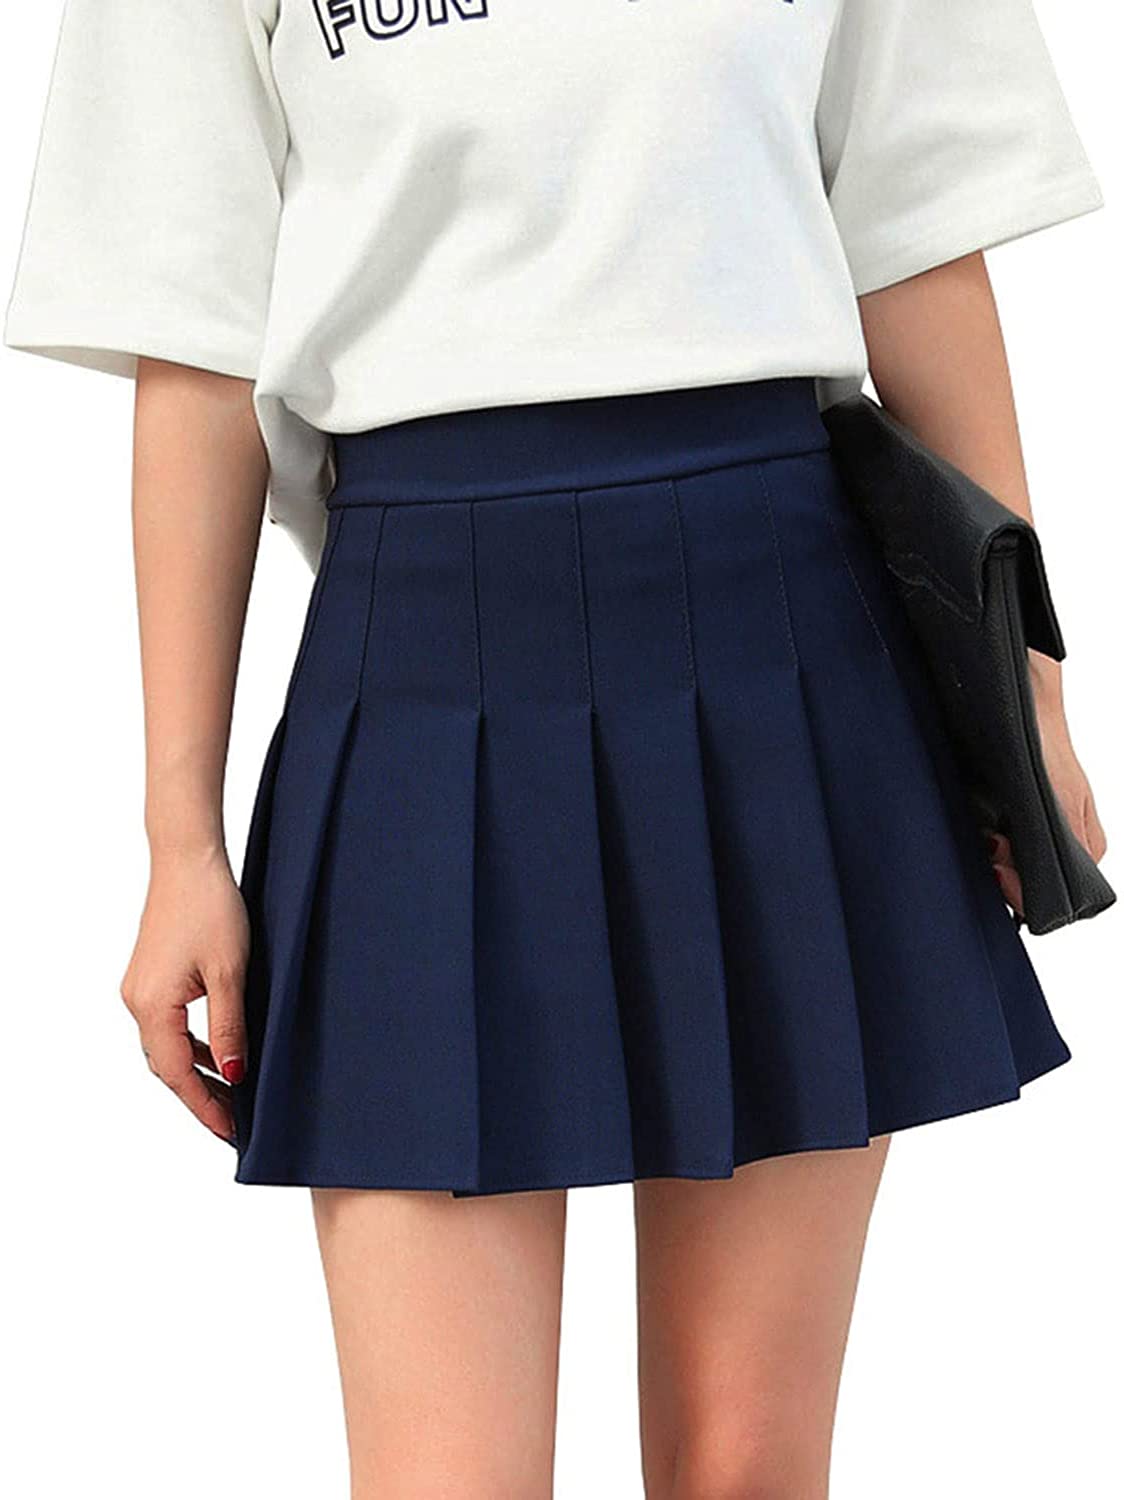 Черная юбка в школу. Юбка Школьная. Юбка в складку. Теннисная юбка темно синяя. Теннисная юбка синяя.